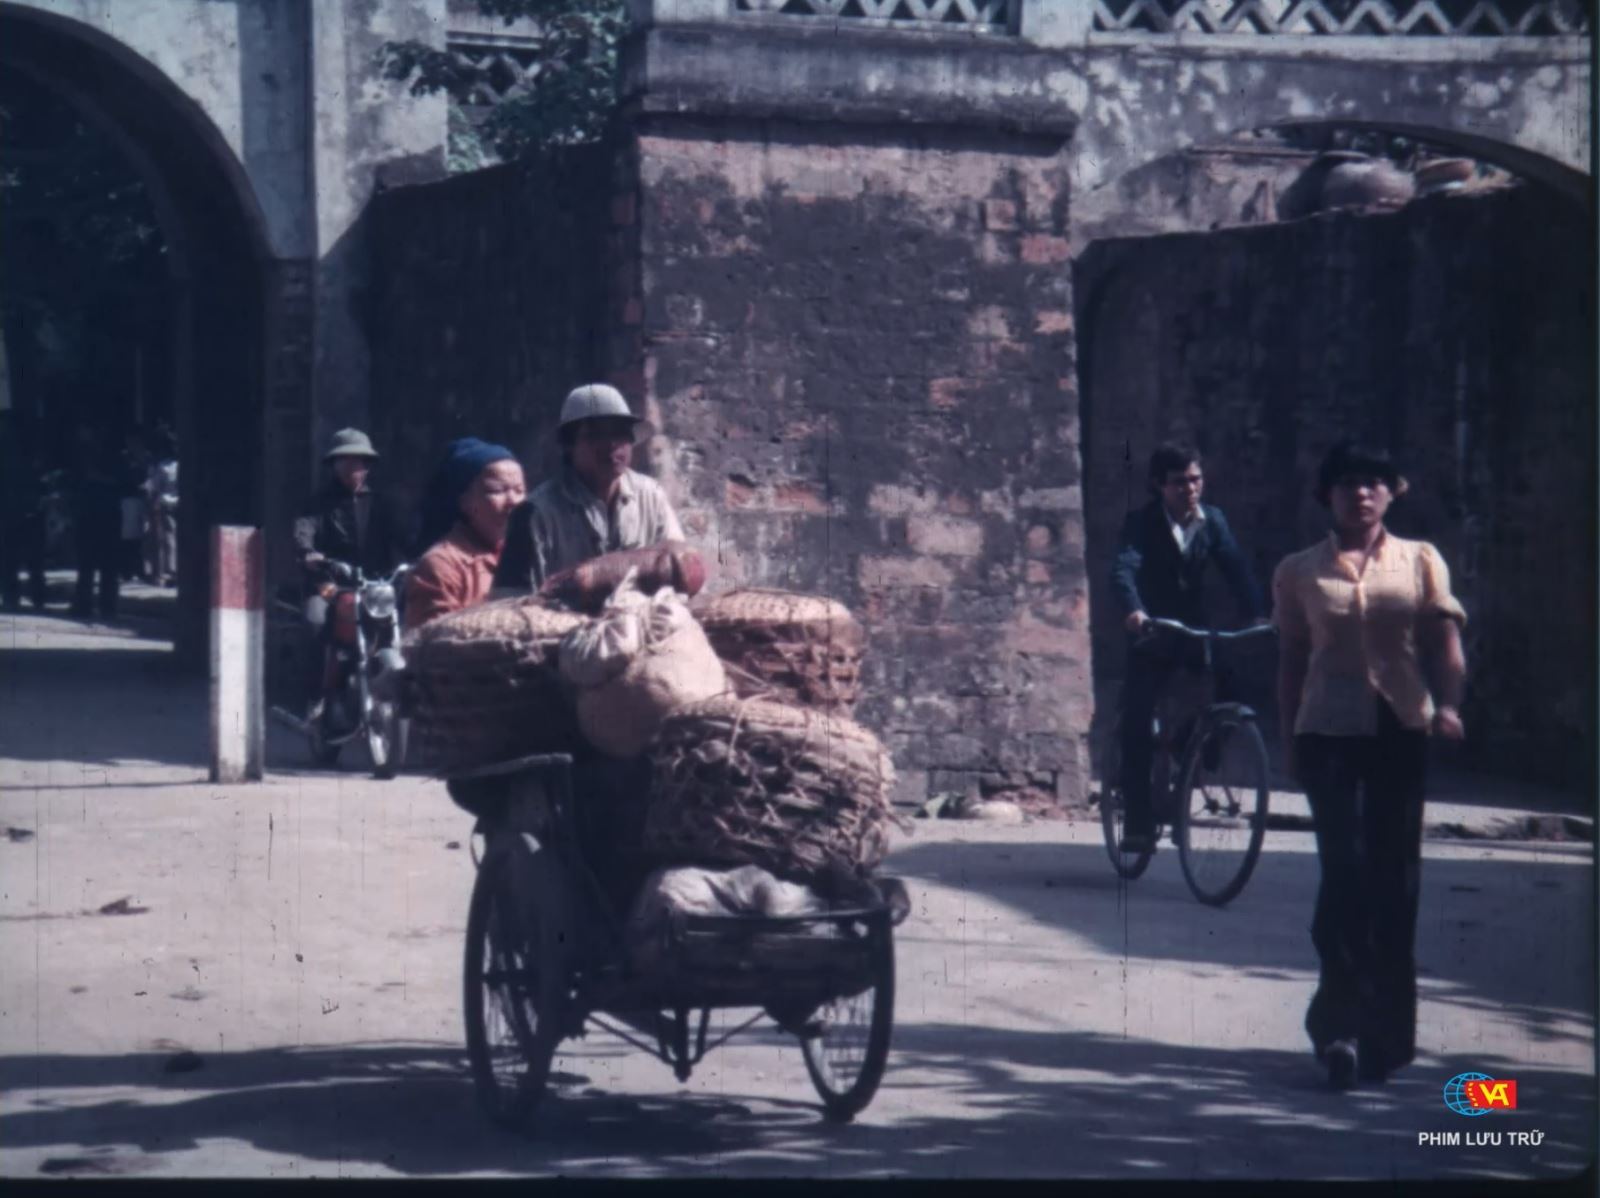 Hai bộ phim tài liệu nổi tiếng của NSND Trần Văn Thủy được phát trên kênh Truyền hình Quốc hội